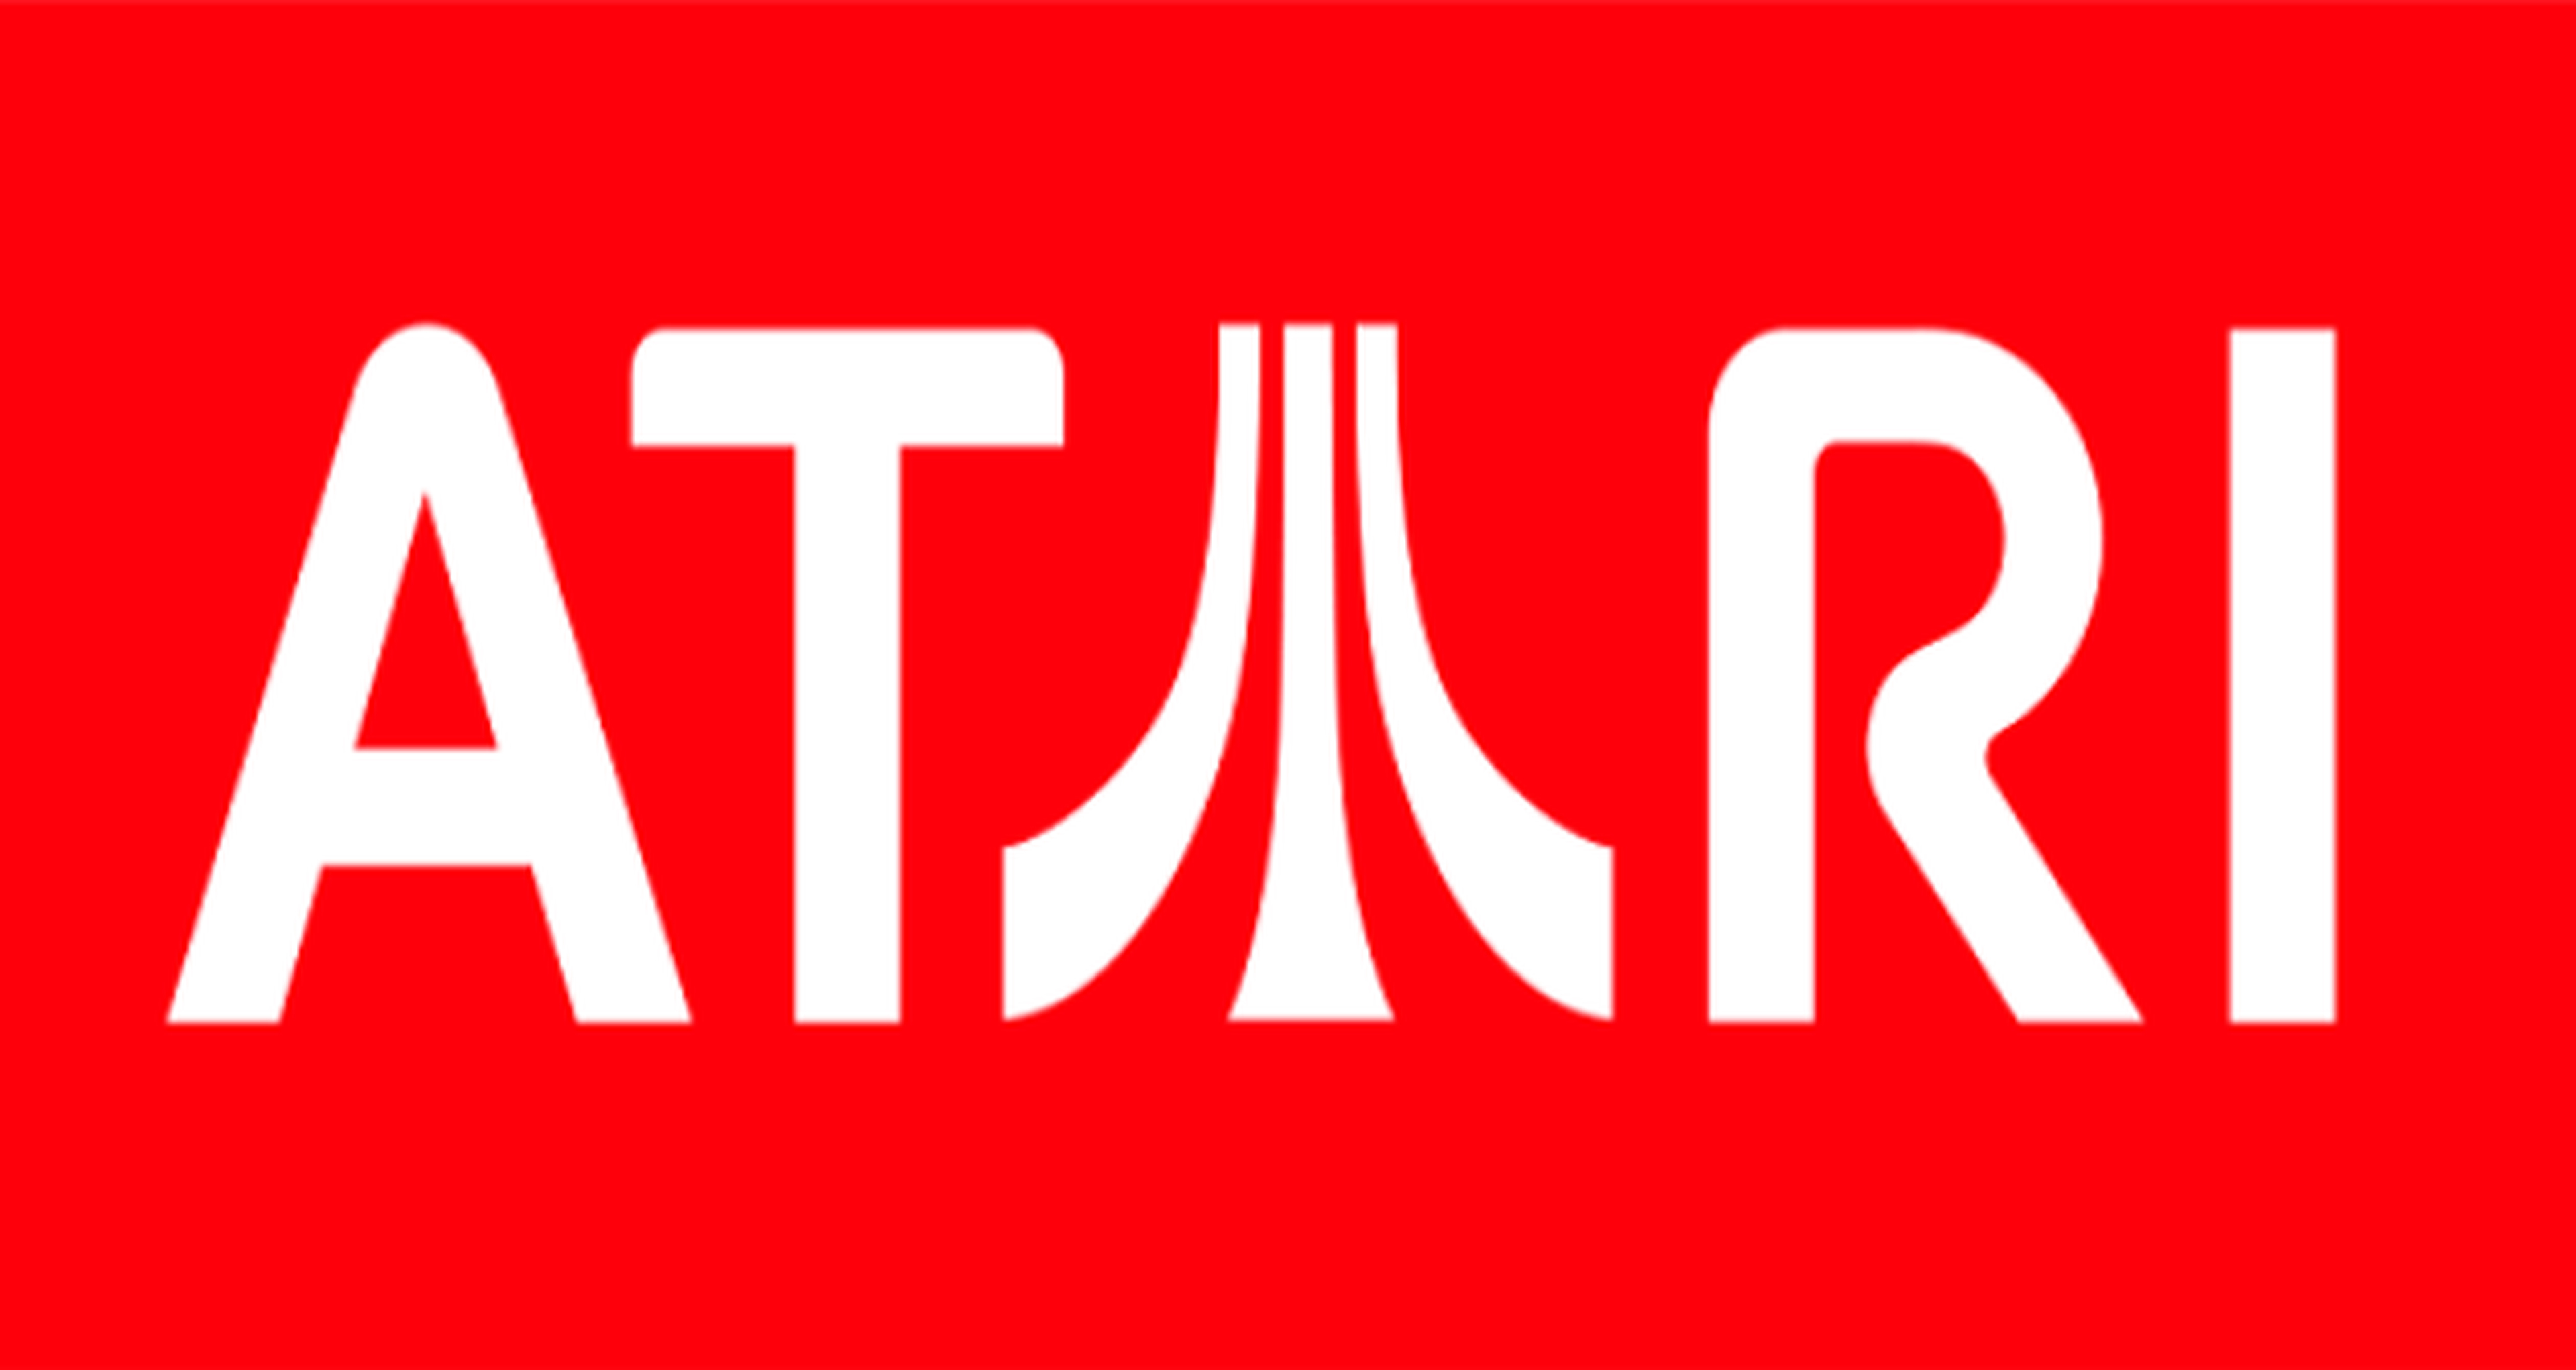 La bancarrota de Atari, aprobada por la justicia